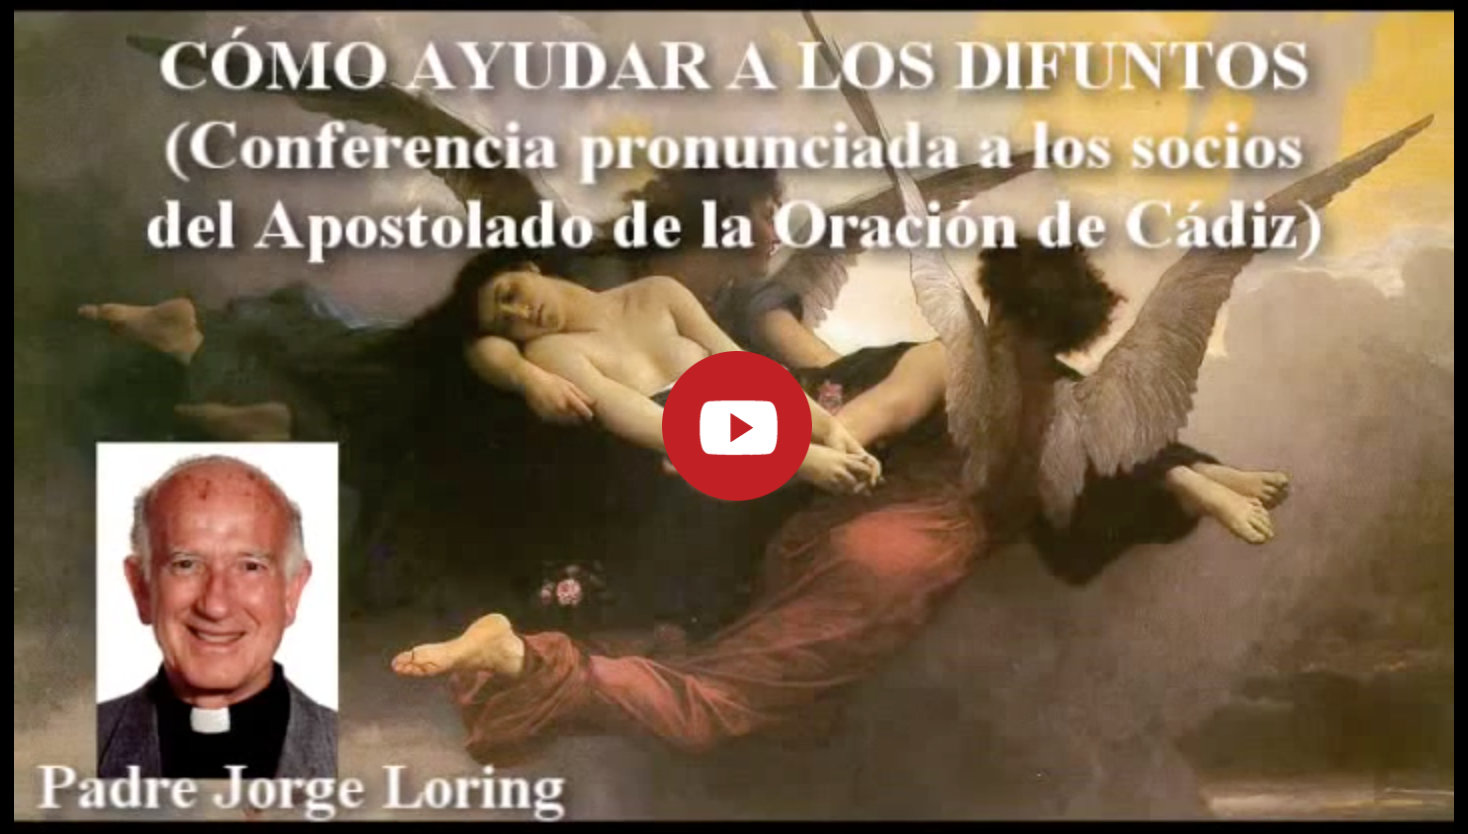 Ver Video del padre Jorge Loring